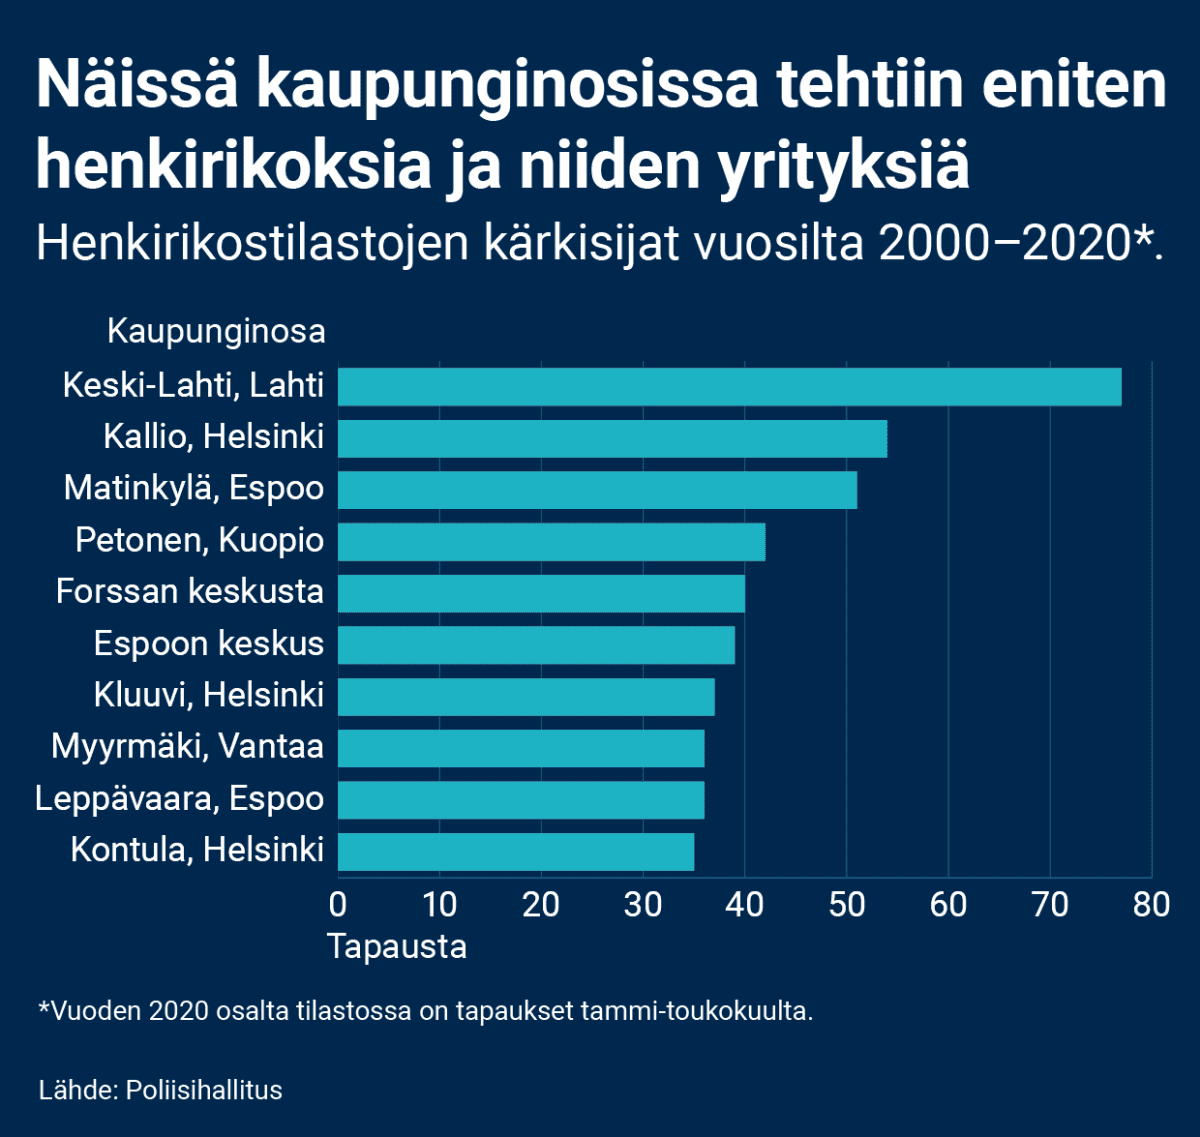 Kaupunginosien kärkisijat henkirikostilastoissa vuosilta 2000–2020. Vuodelta 2020 tilastossa on mukana tapaukset tammi-toukokuulta. Kaupunginosista eniten henkirikoksia tehtiin Keski-Lahdessa (77), sitten Helsingin Kalliossa (54), Espoon Matinkylässä (51), Kuopion Petosella (42), Forssan keskustassa (40), Espoon keskuksessa (39), Helsingin Kluuvissa (37), Vantaan Myyrmäess (36), Espoon Leppävaarassa (36) ja Helsingin Kontulassa (35).